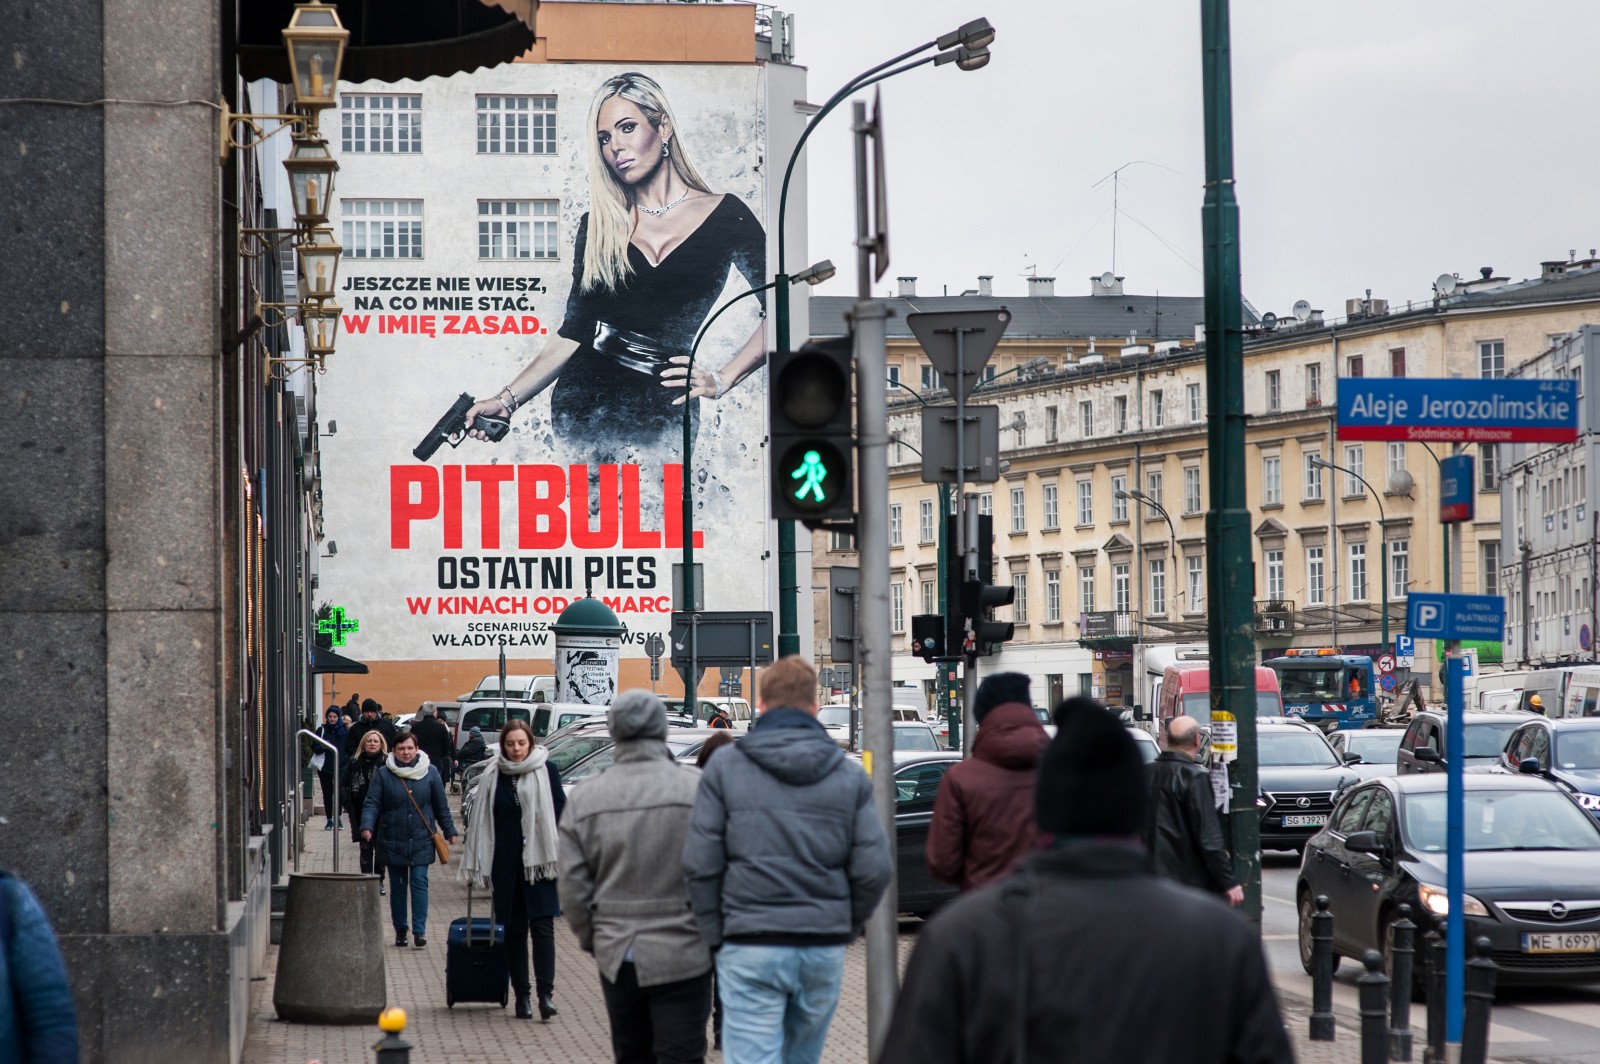 Blick auf das Pitbull Werbemural von Jerozolimskie Alleen an die Bracka Straße in Warschau | Pitbull. Ostatni pies | Portfolio